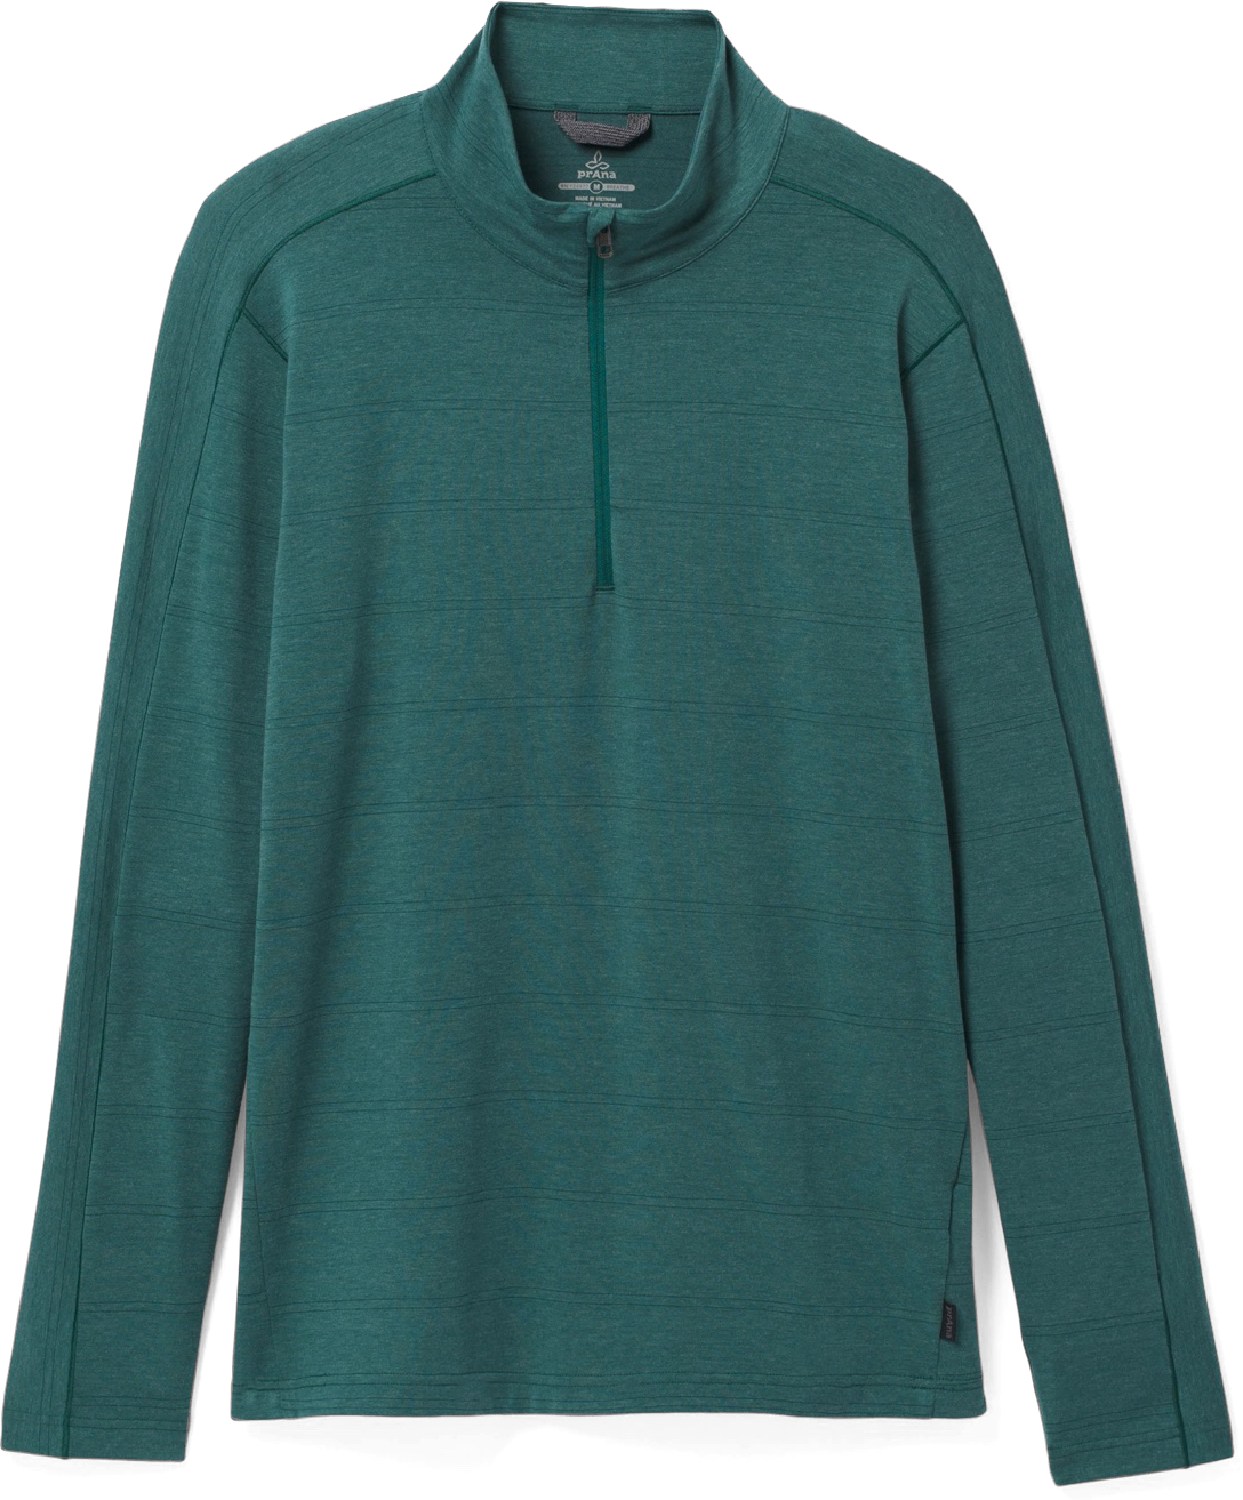 Рубашка с молнией до половины Watchtower — мужская prAna, зеленый цена и фото